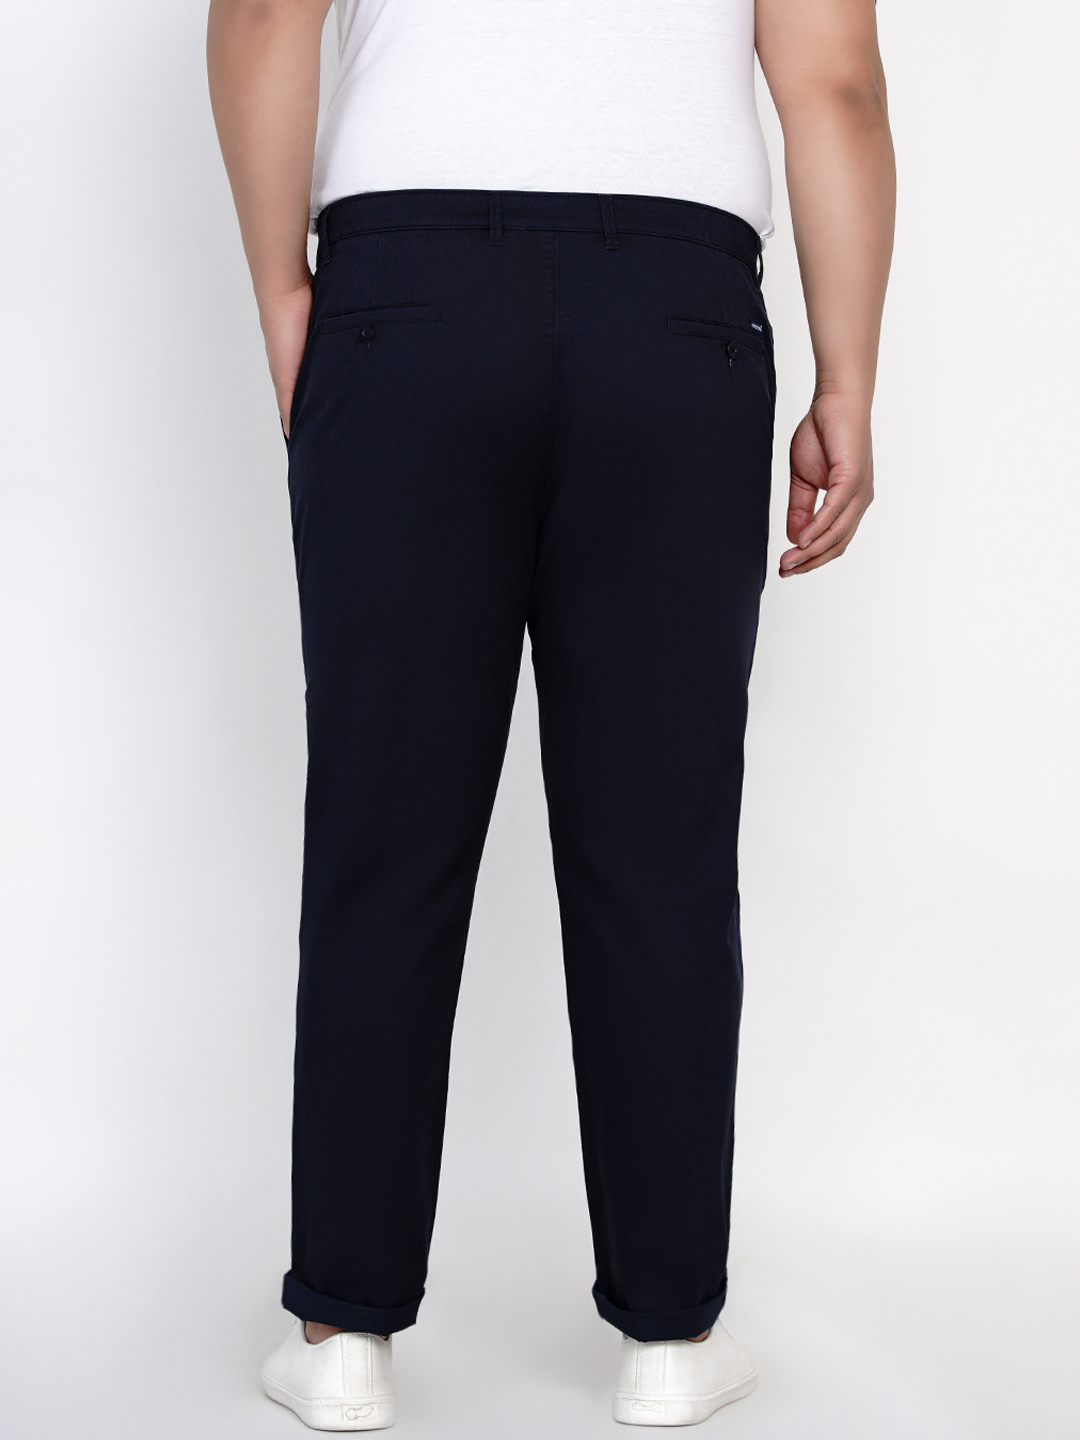 bottomwear/trousers/JPTR2161I/jptr2161i-5.jpg